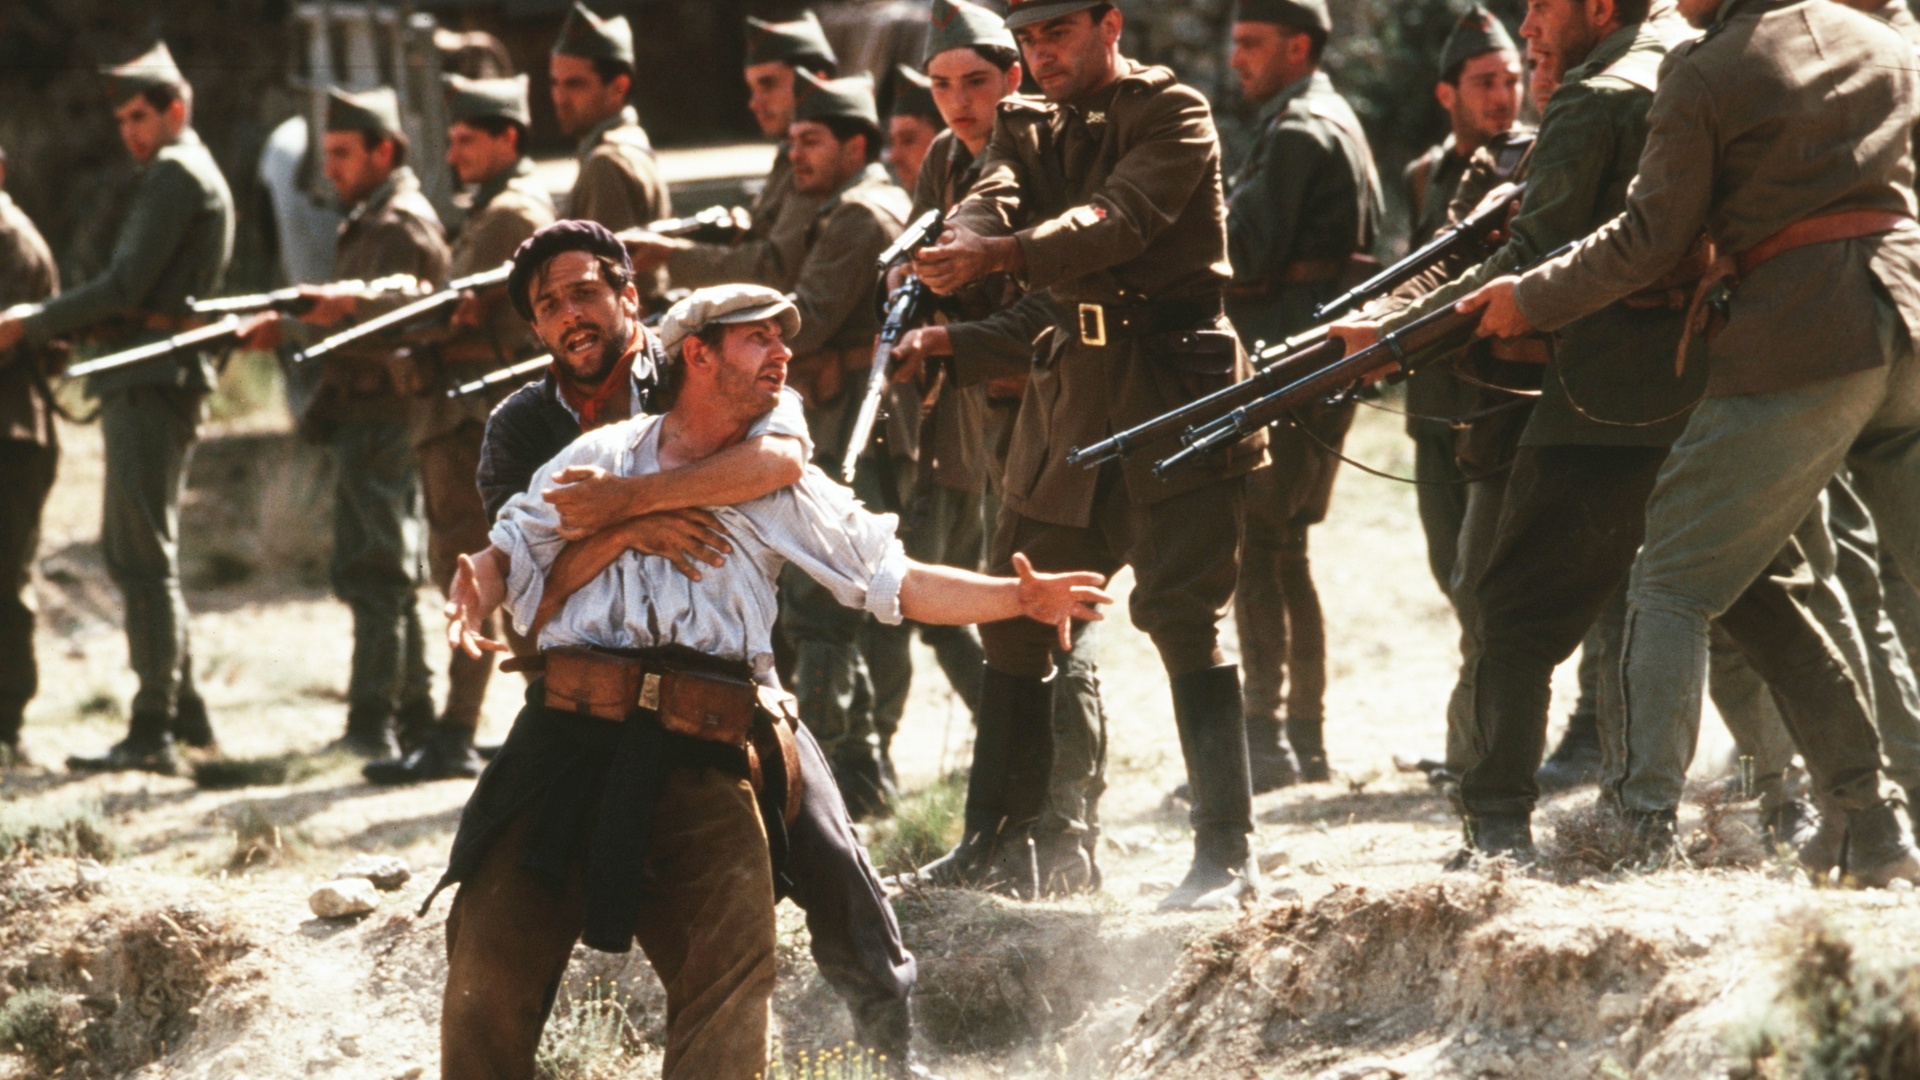 Stillbild från filmen Land och frihet. En man med sjal runt halsen håller om en man med vit skjorta. Soldater i uniformer pekar sina gevär mot dem.